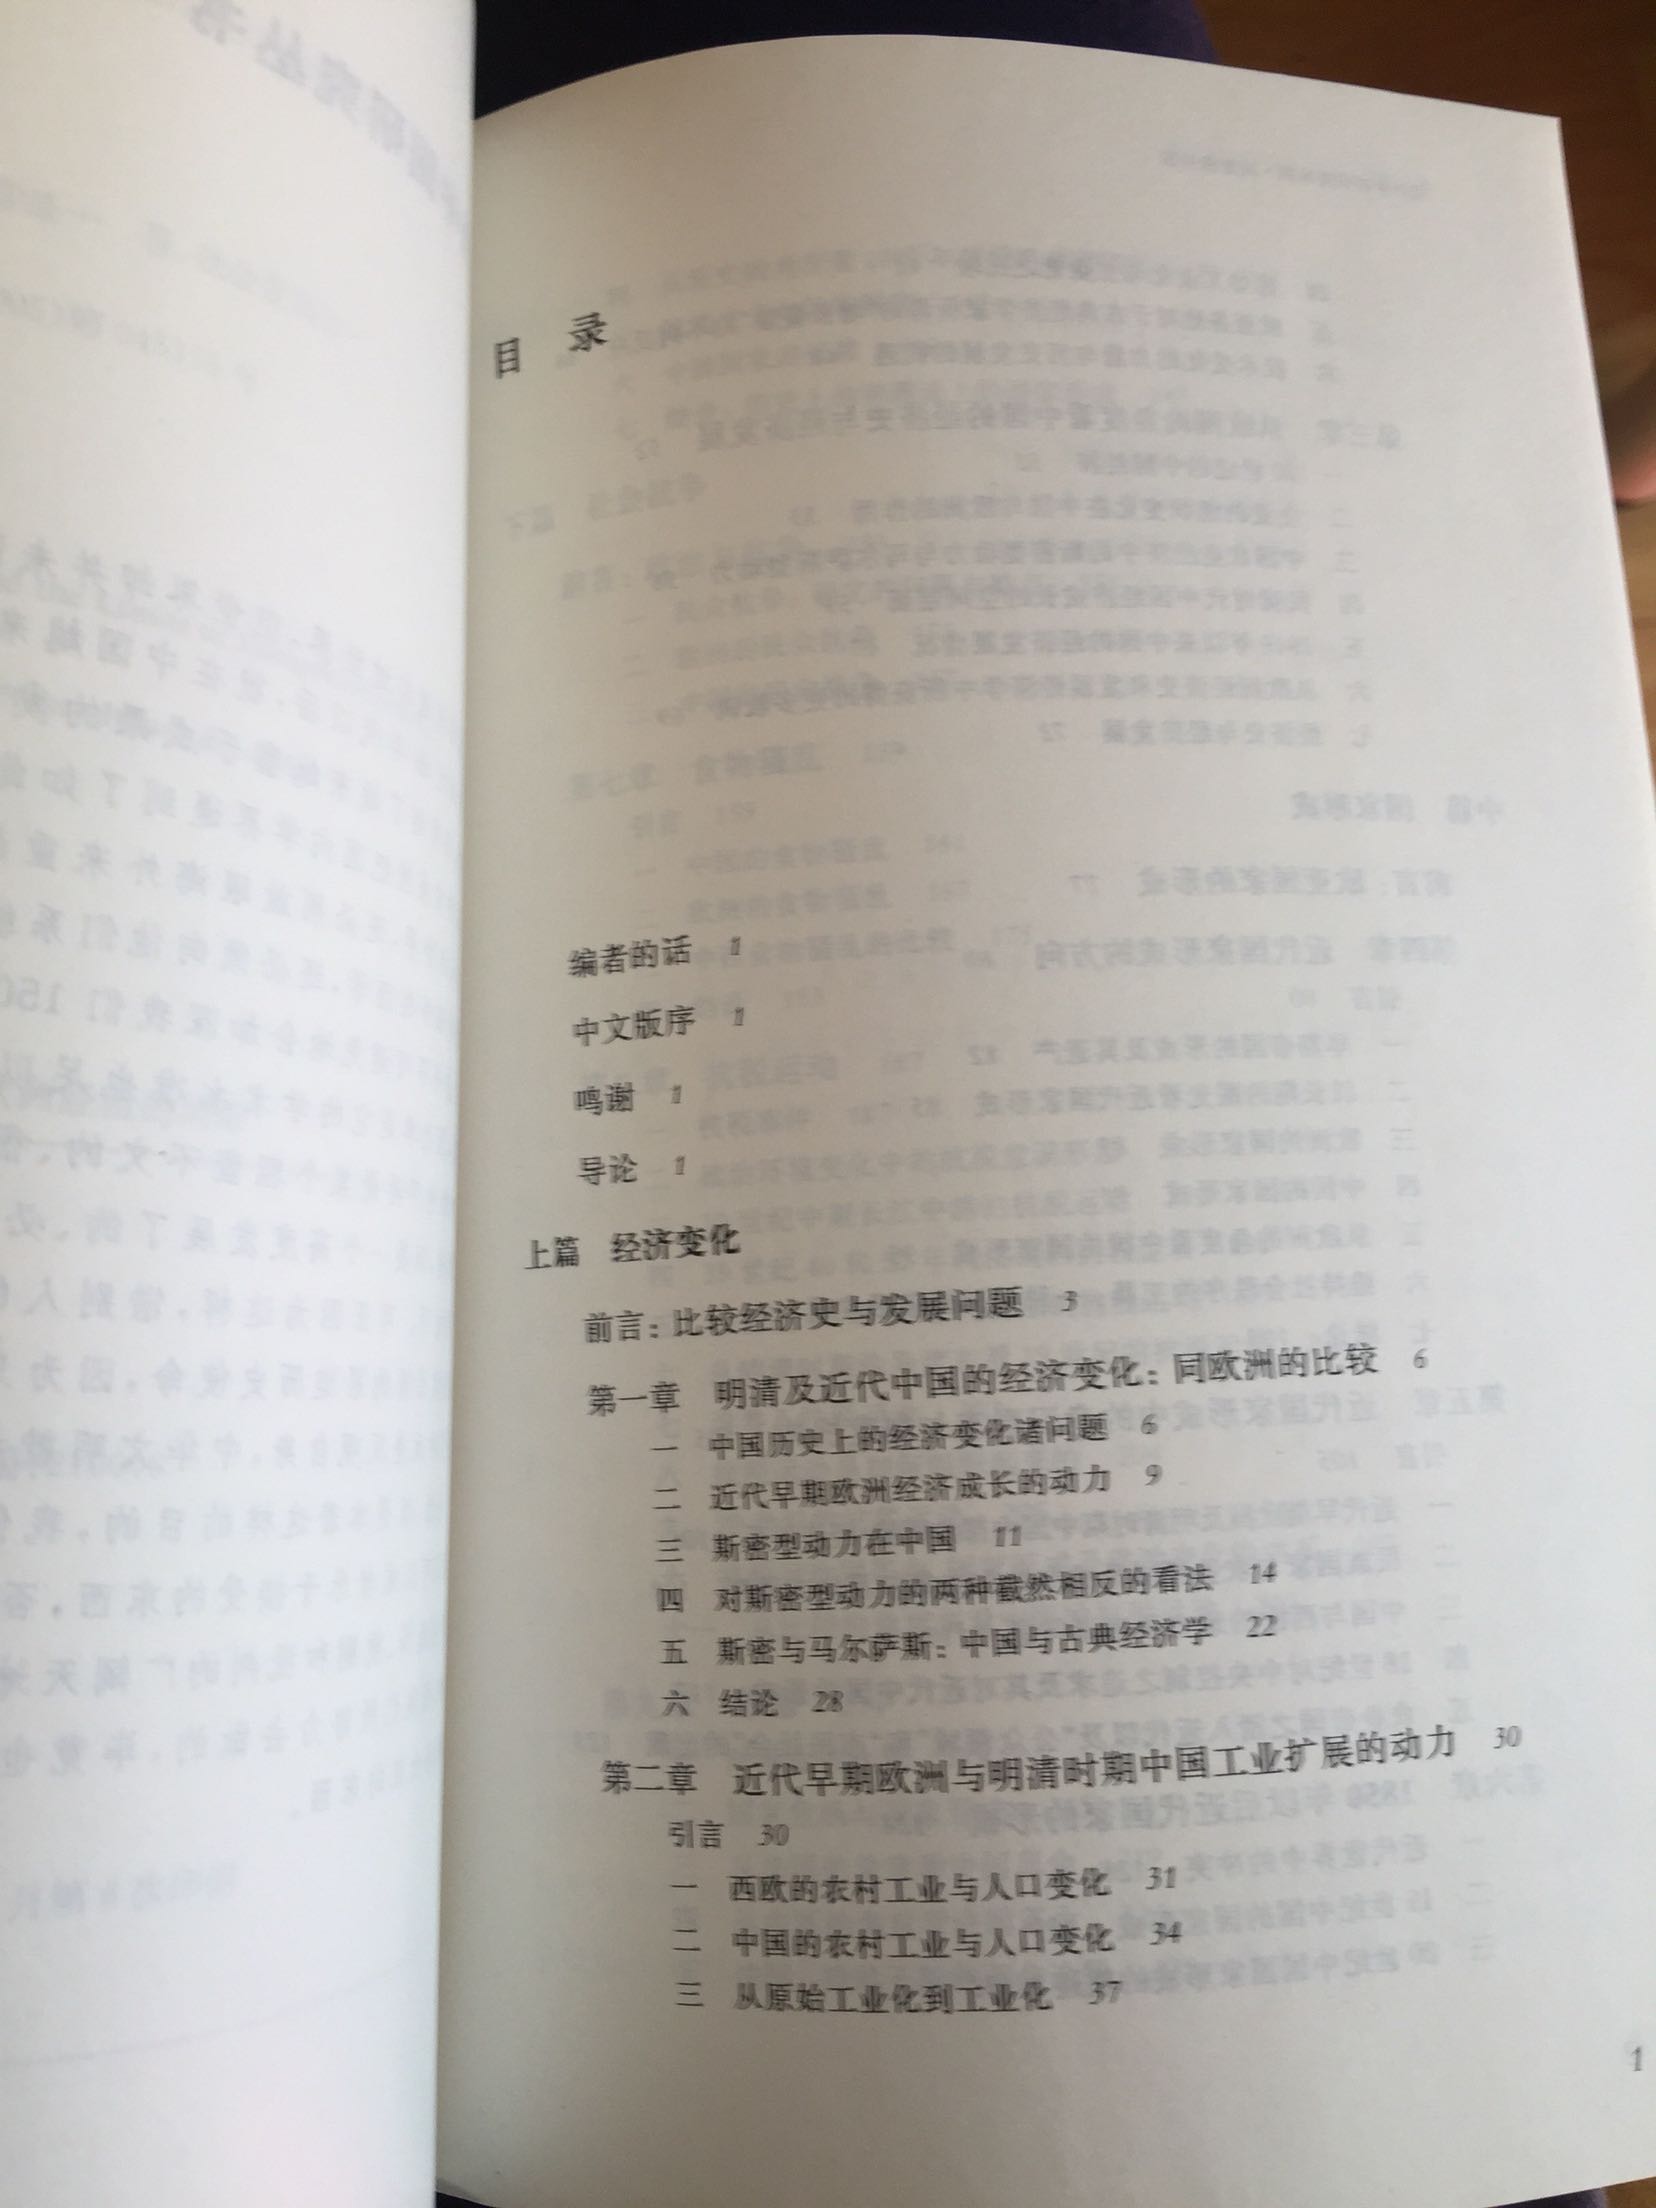 海外中国研究书系是我非常喜欢的一个系列，从本科开始到现在收藏了20多本这个系列的书。遗憾的是没有一个书店里有全集，所以只能一本一本的买，这次碰到的这本主题就很令人感兴趣，希望不错^_^